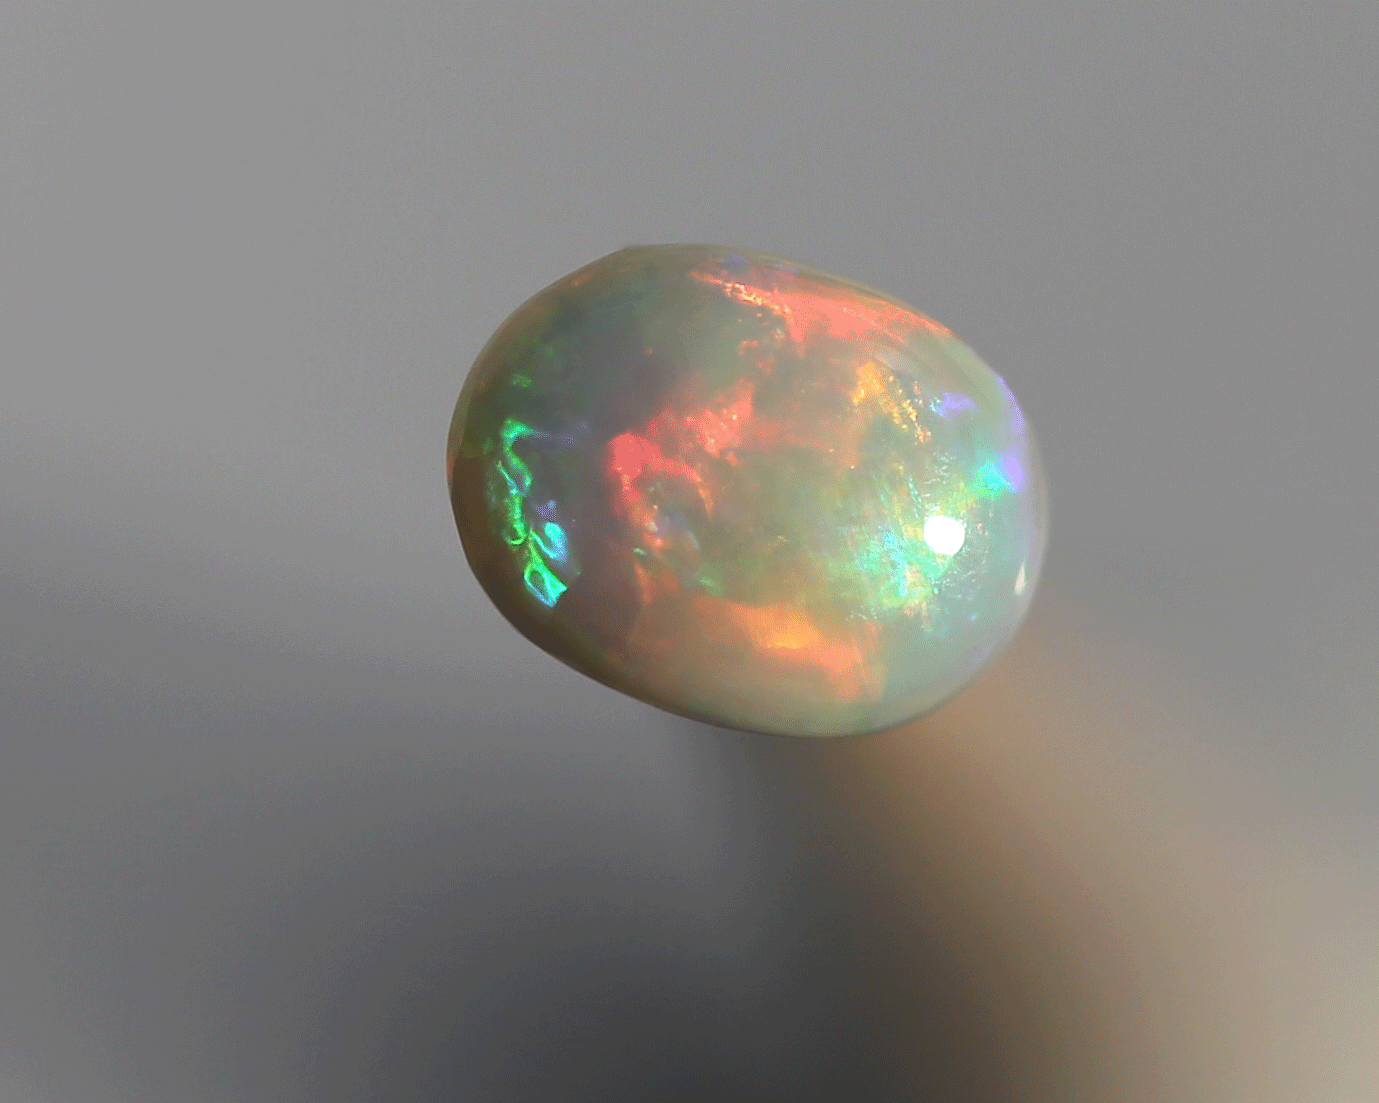 0.48 ct white opal